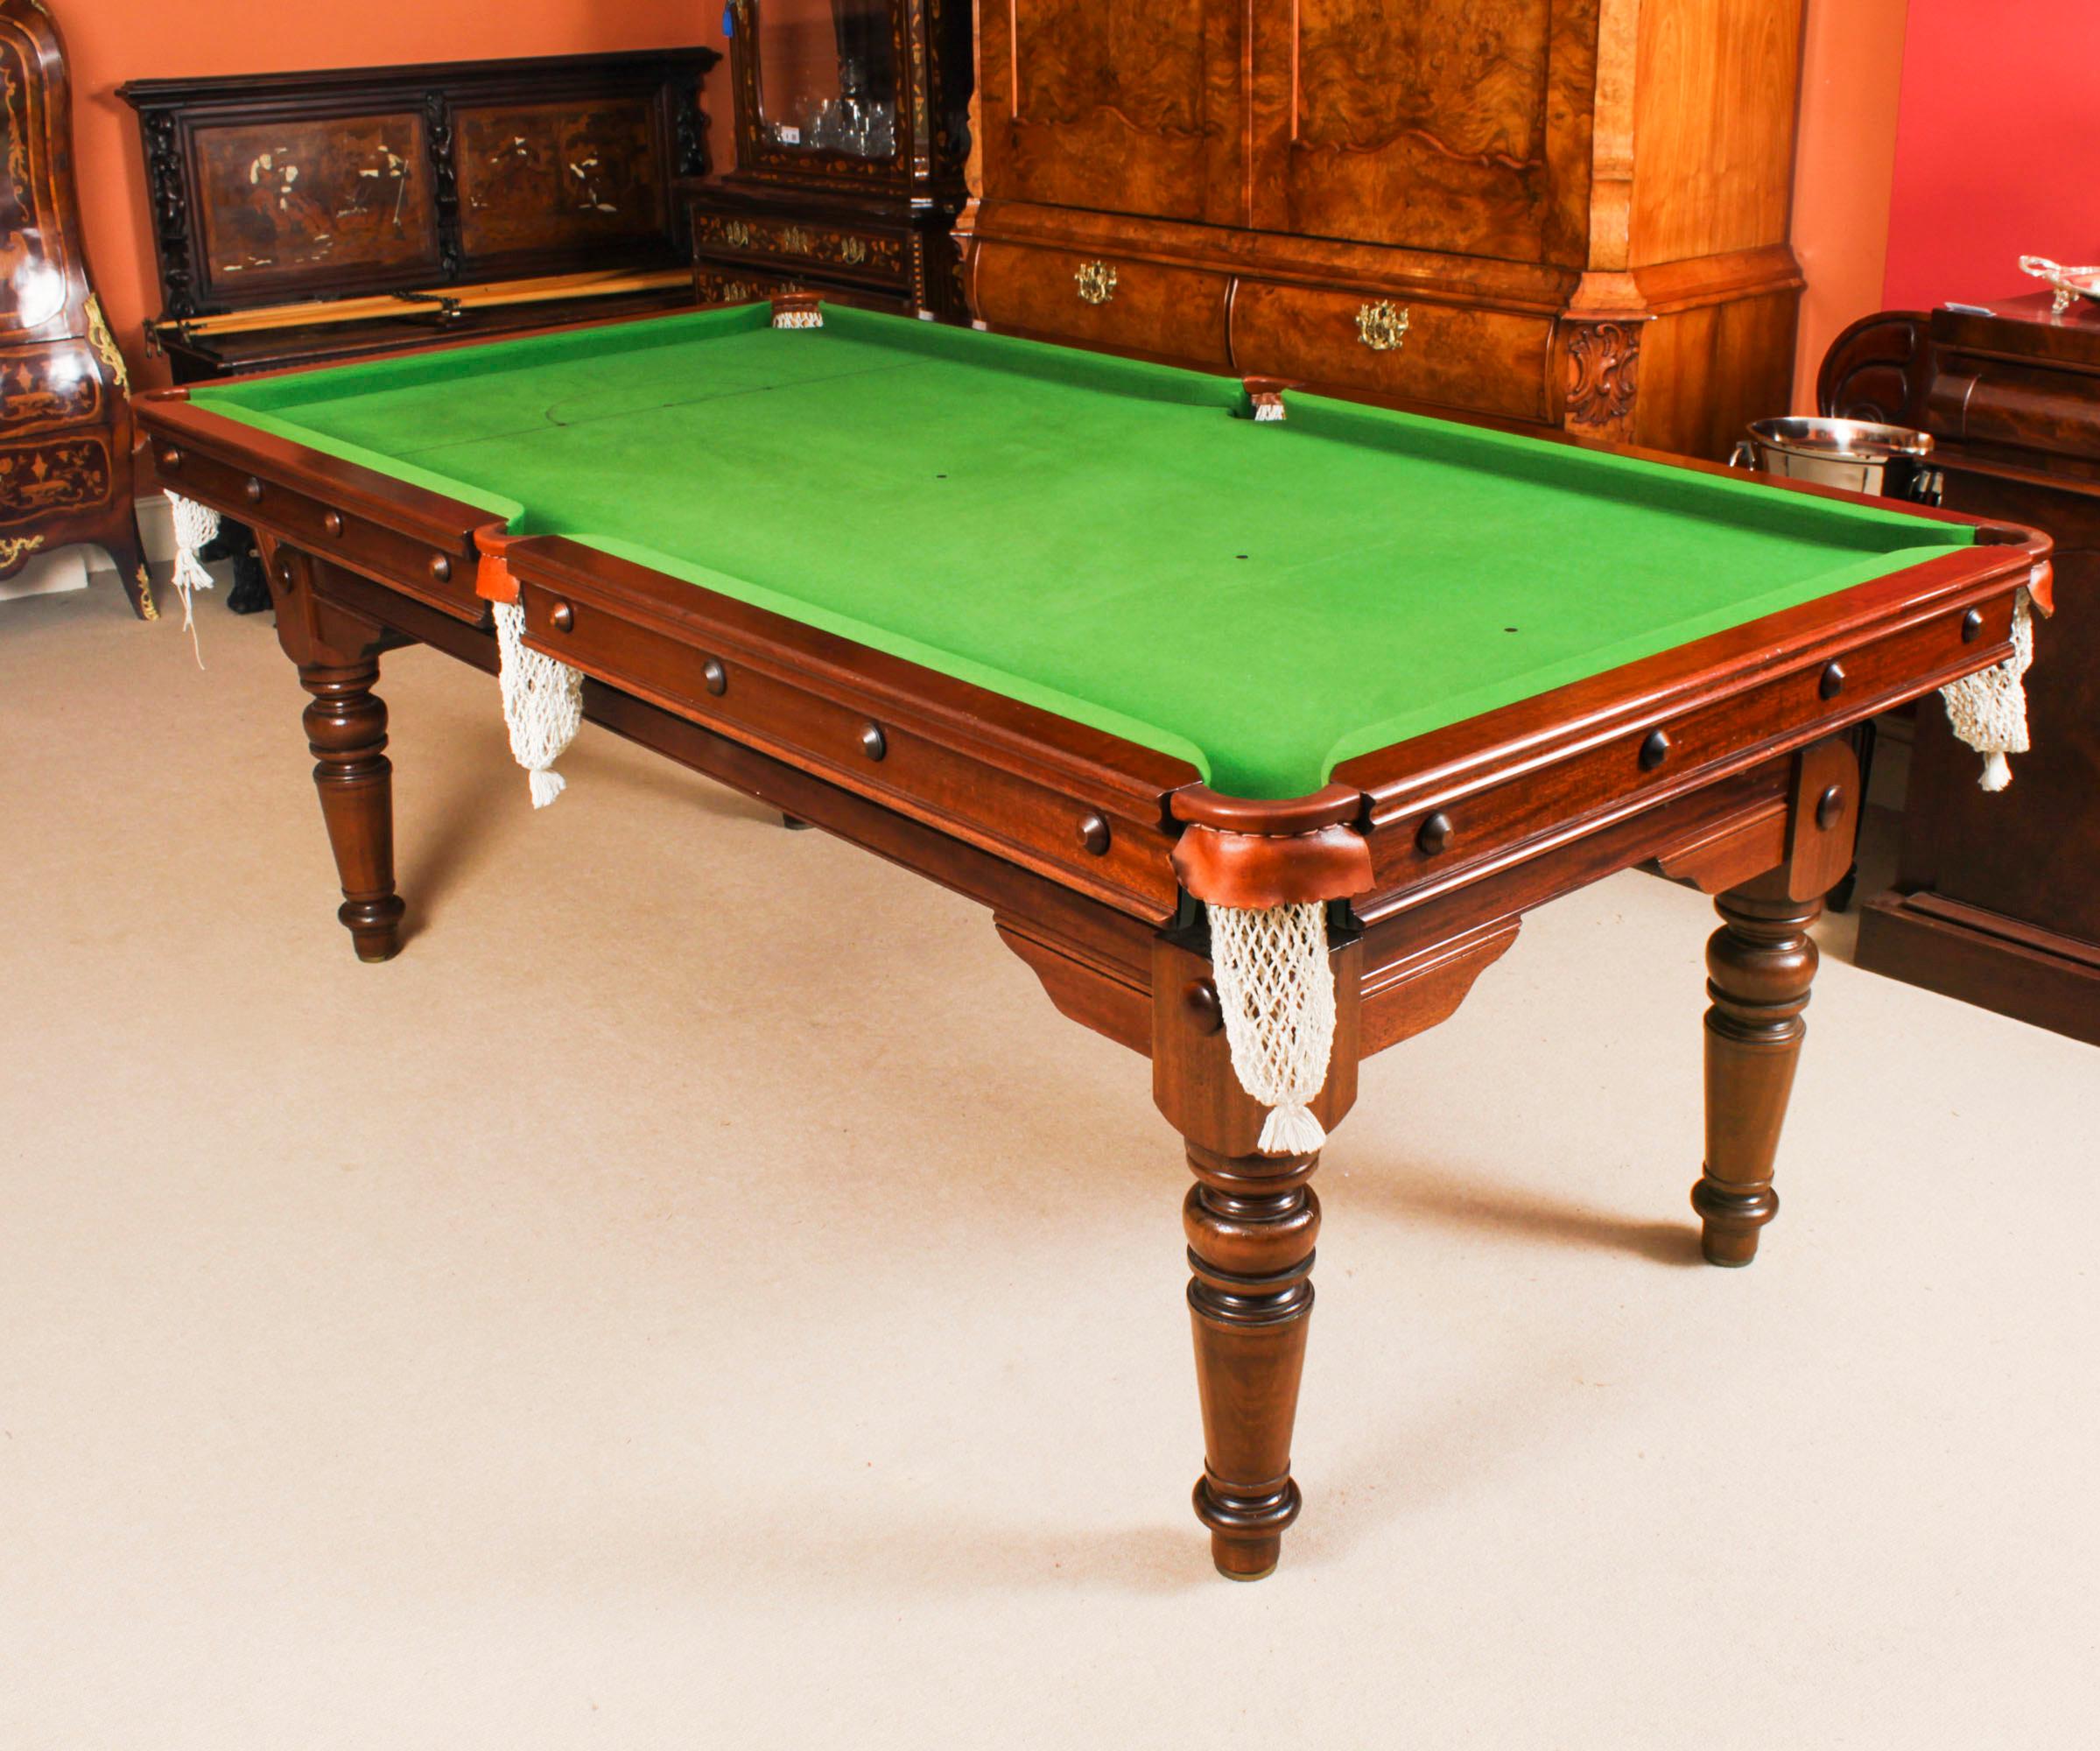 Un magnífico metamórfico eduardiano antiguo  mesa de billar snooker / mesa de comedor de E.J.Riley Circa 1900 en fecha restaurada por los renombrados fabricantes de mesas de billar Hamilton & Tucker.
 
Esta mesa destacará en tu salón, puede sentar